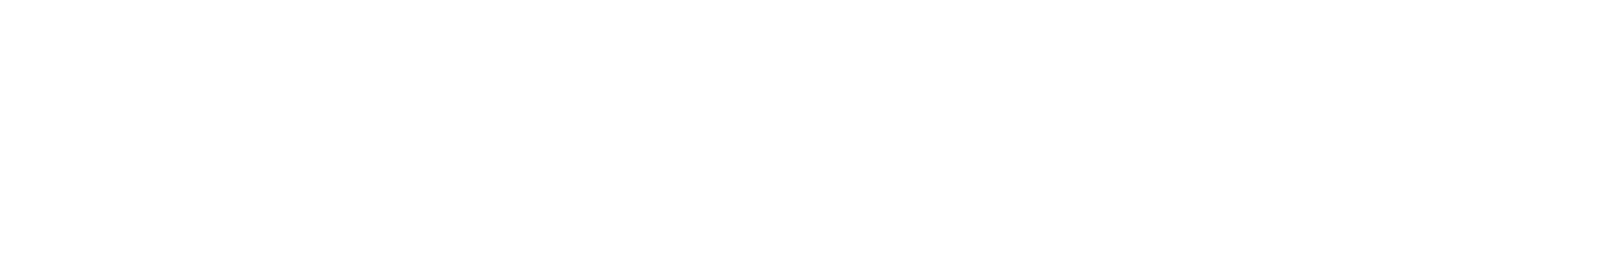 Krafton logo large for dark backgrounds (transparent PNG)